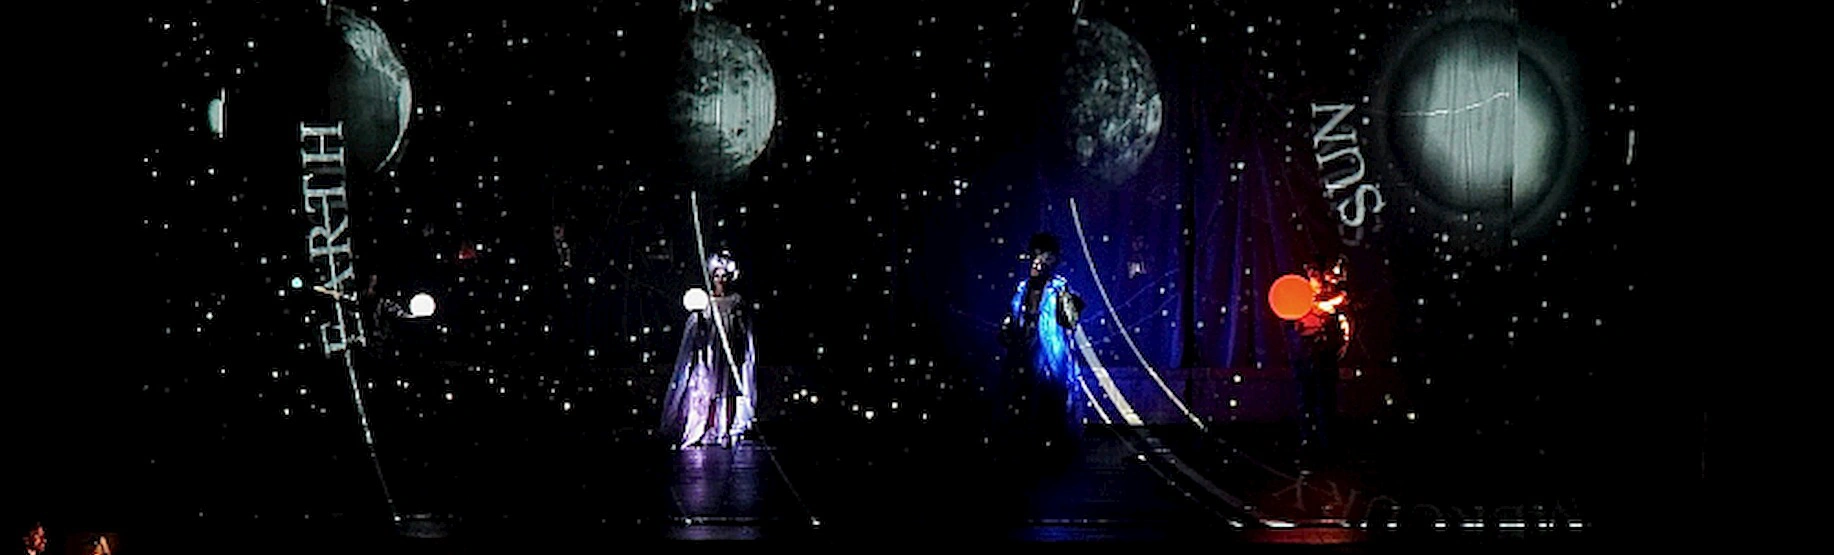 XV Международного театрального фестиваля им. А.П. Чехова начнется 14 мая с испанского спектакля «Сотворение мира»